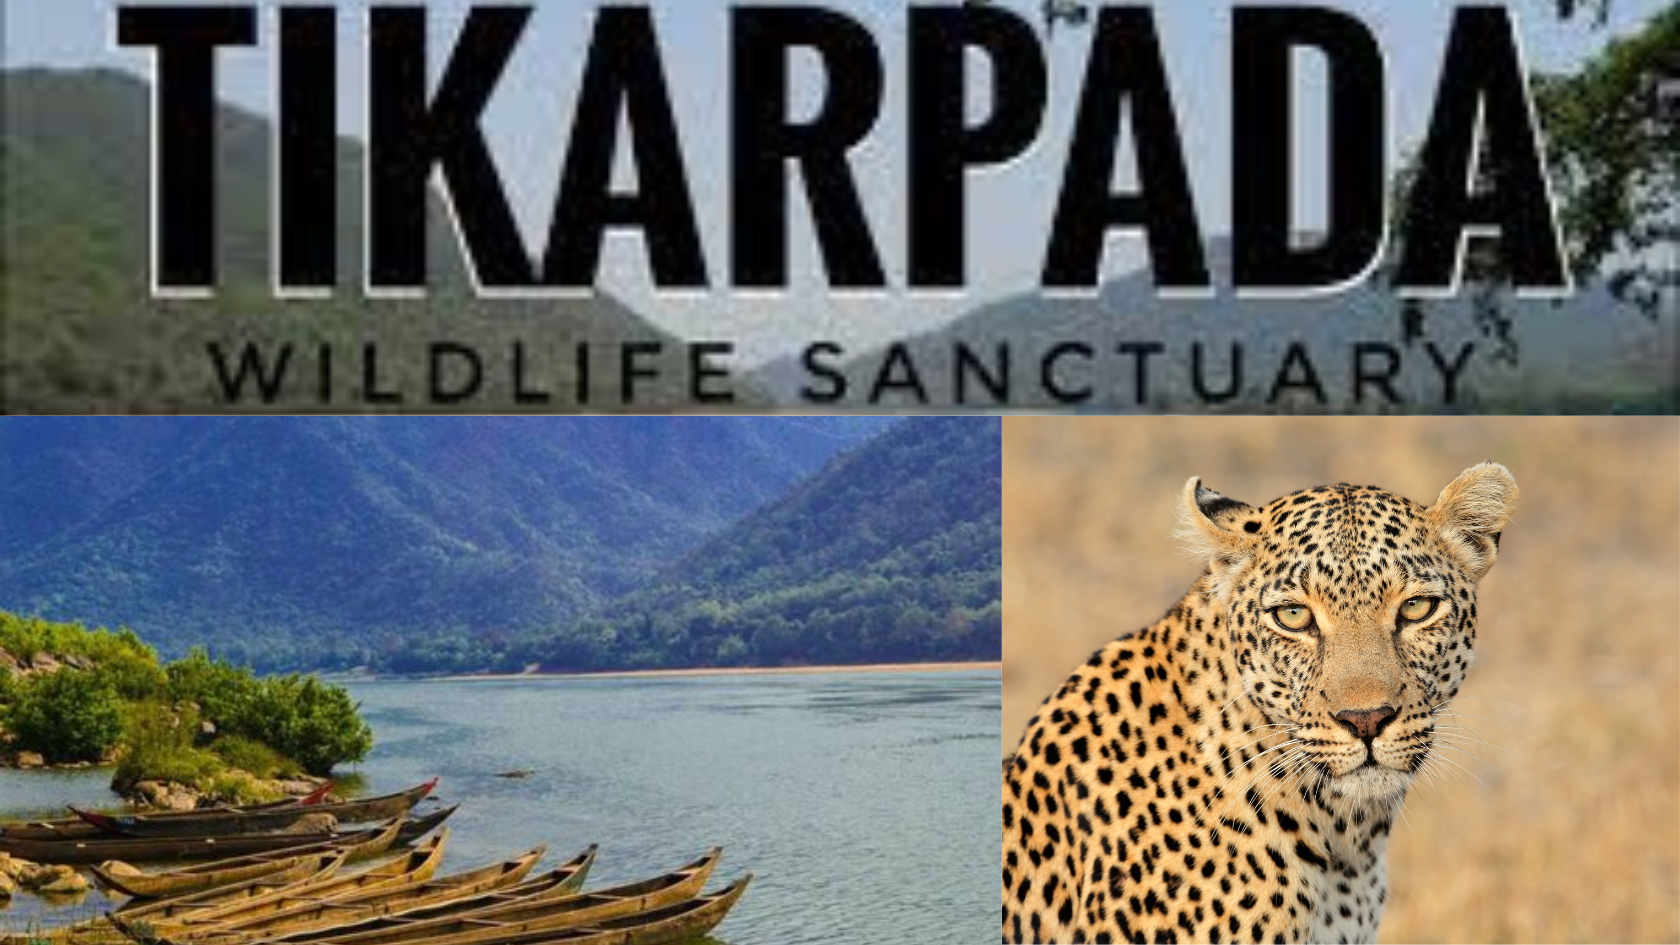 Tikarpada Wildlife Sanctuary